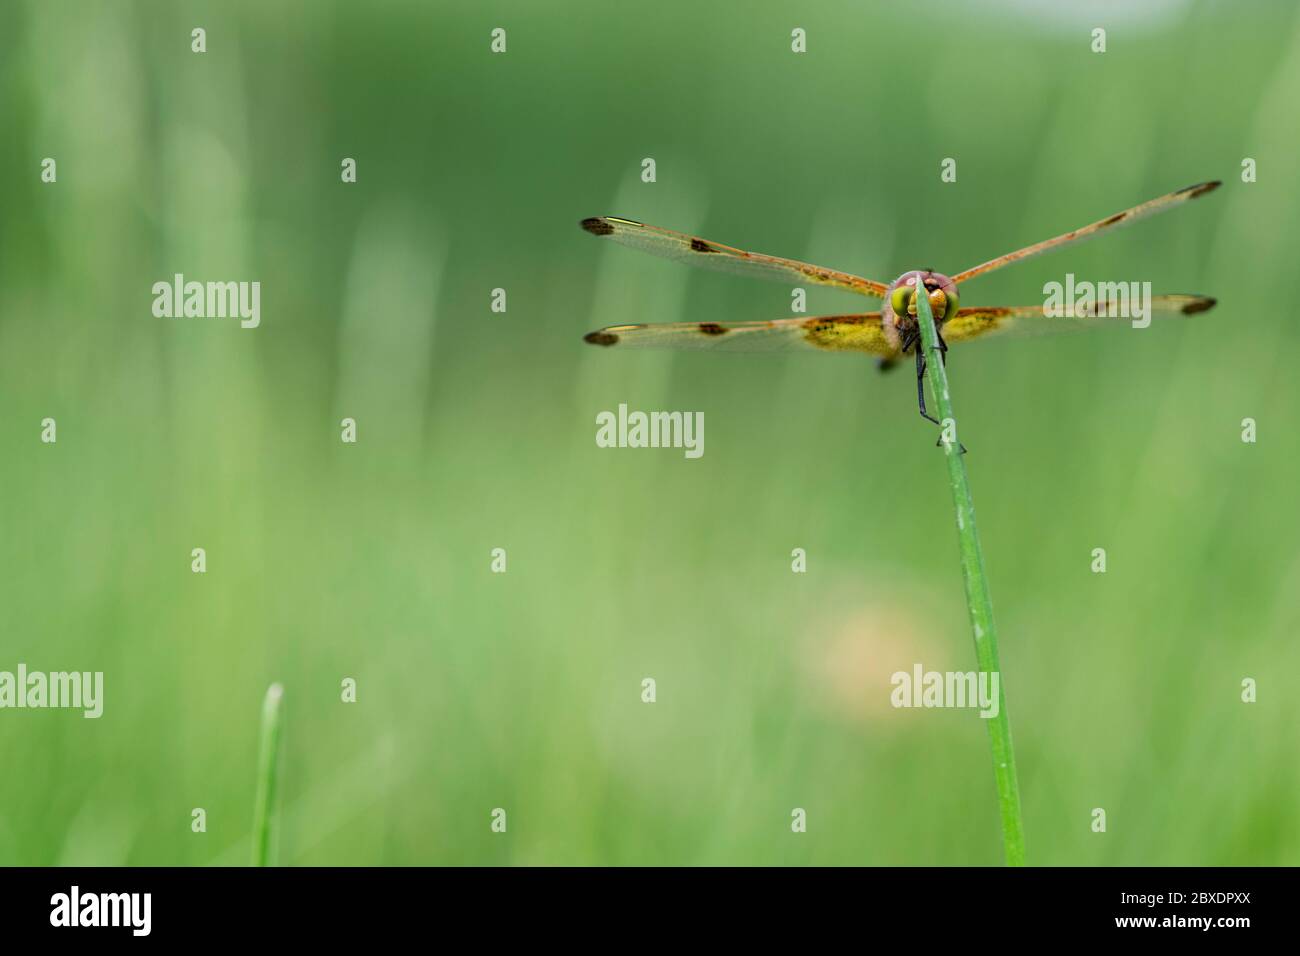 Eine calico Wimpel Libelle stert auf der Spitze eines Grashalms, zeigt seine bunten Netzflügel und Augen. Höchstwahrscheinlich ein jugendliches Männchen. Stockfoto